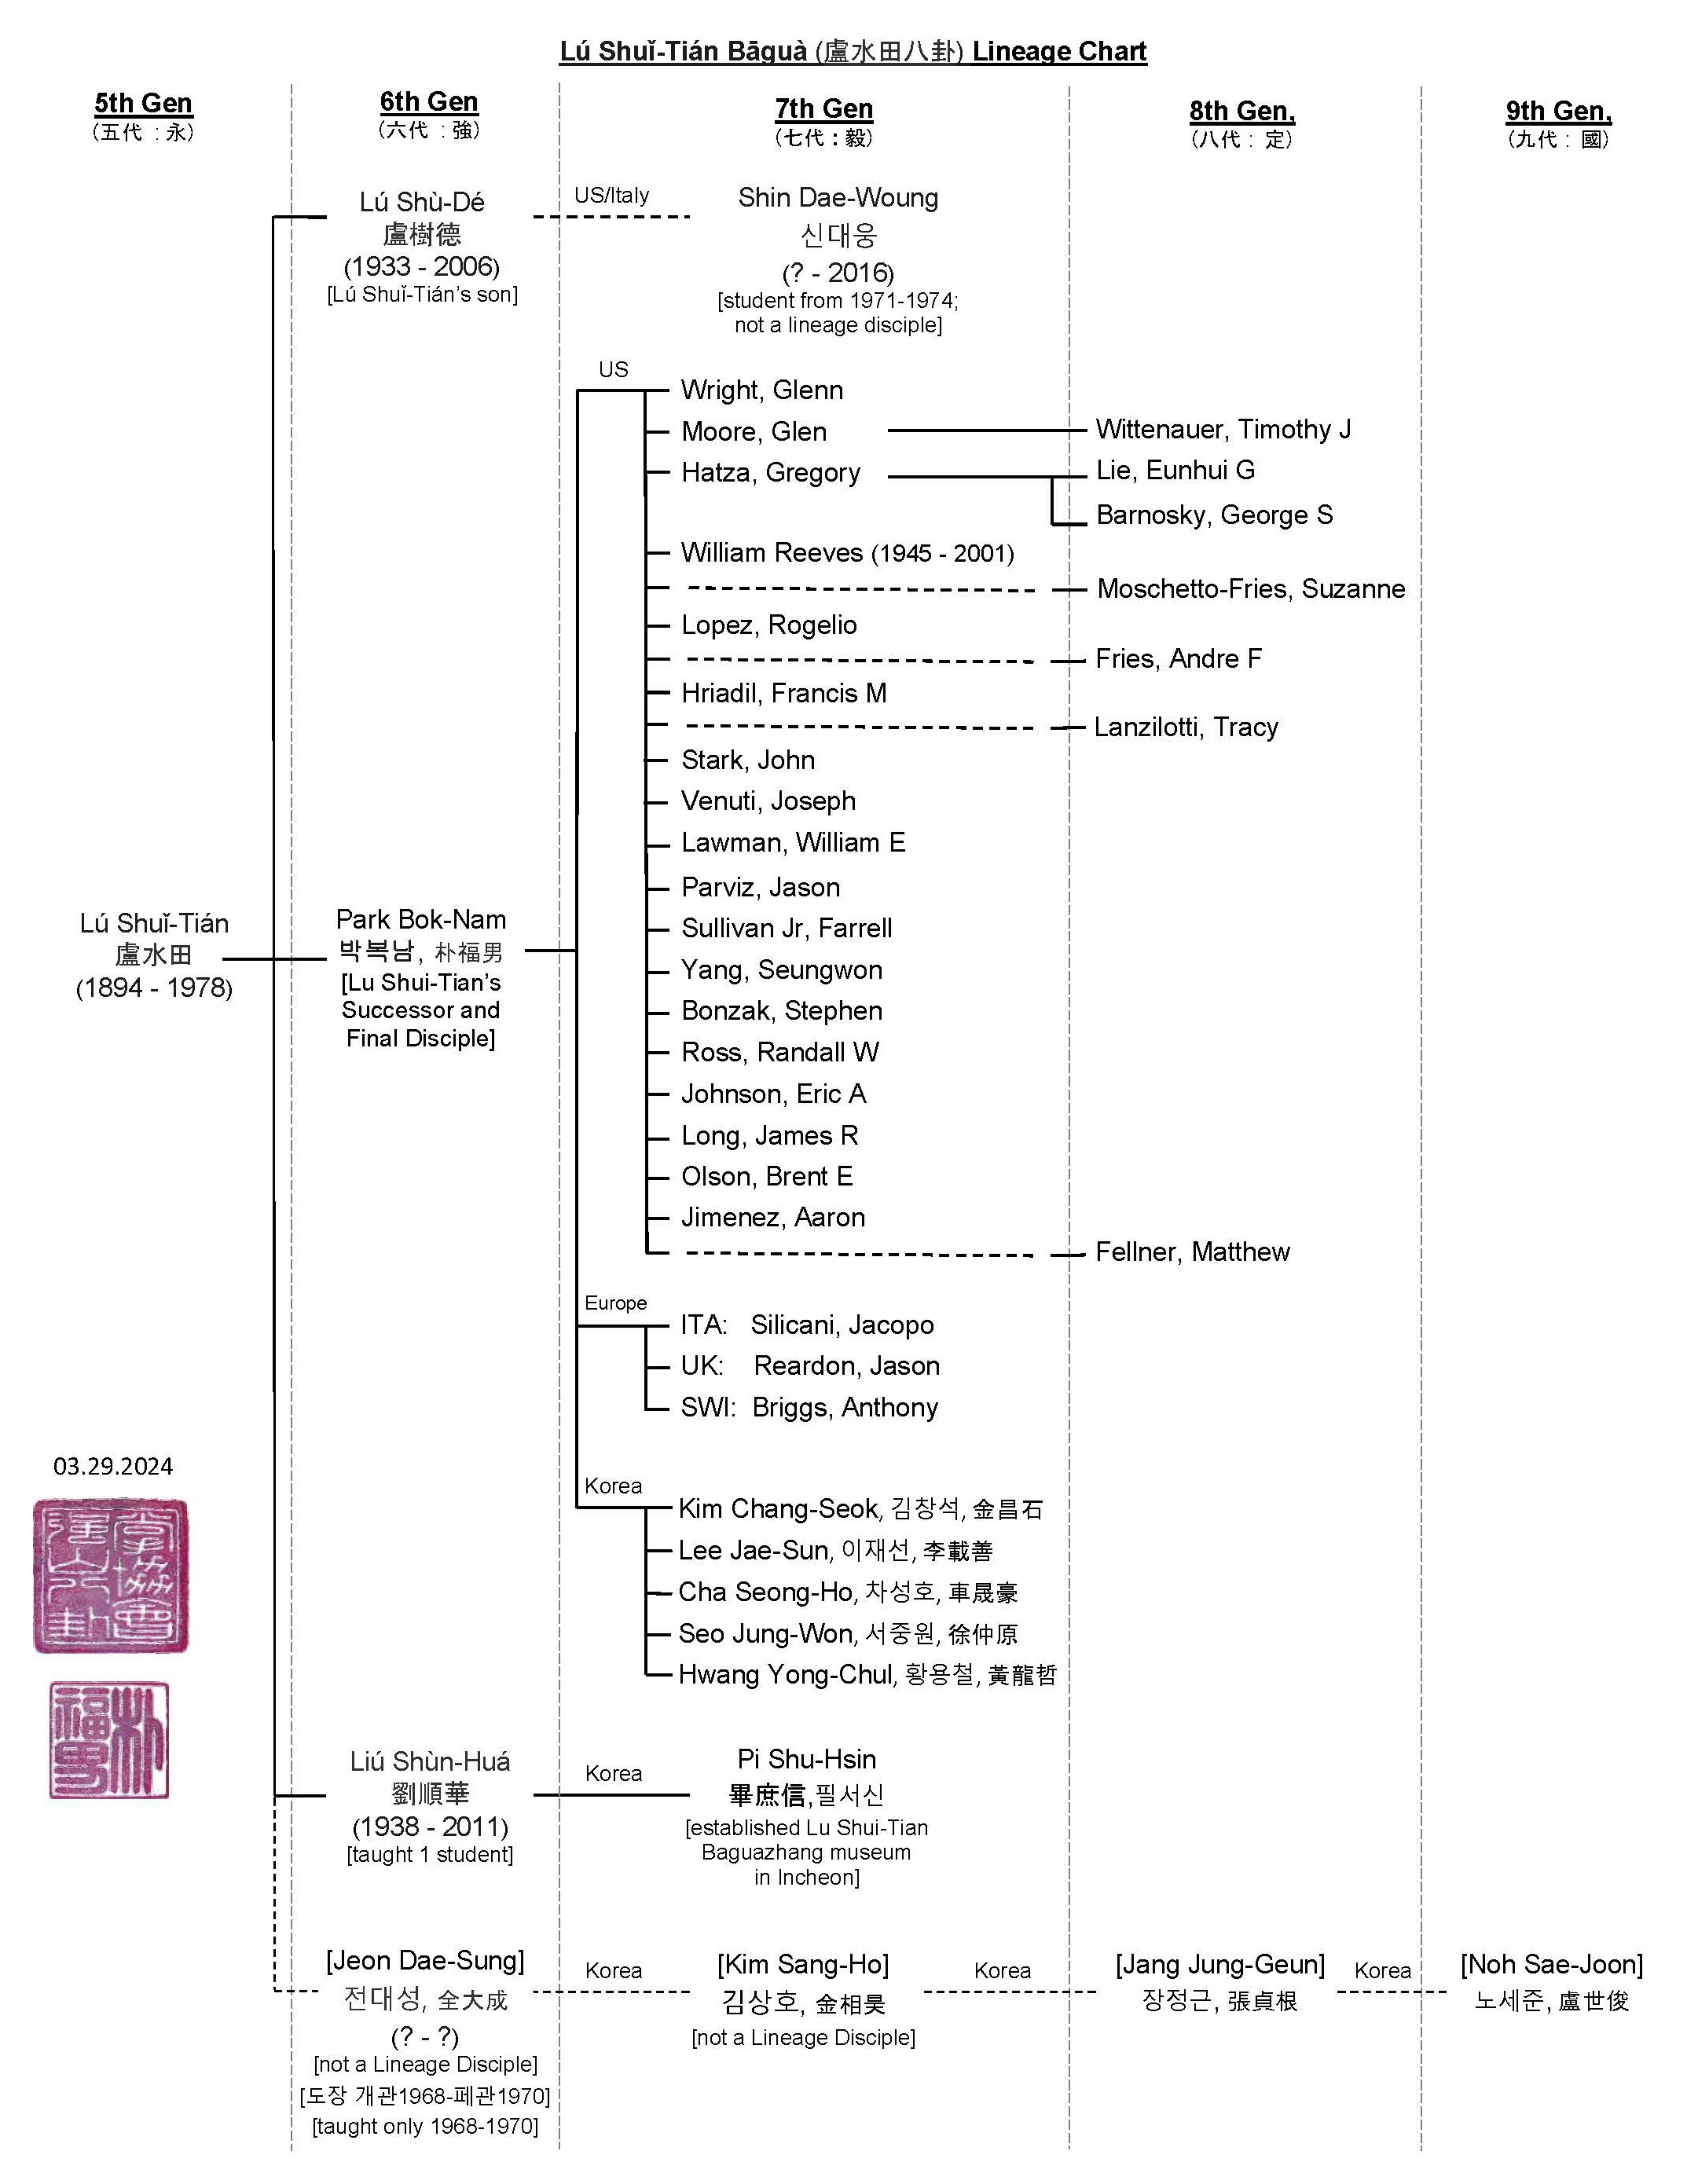 Lu Shui-Tian Lineage Chart Final